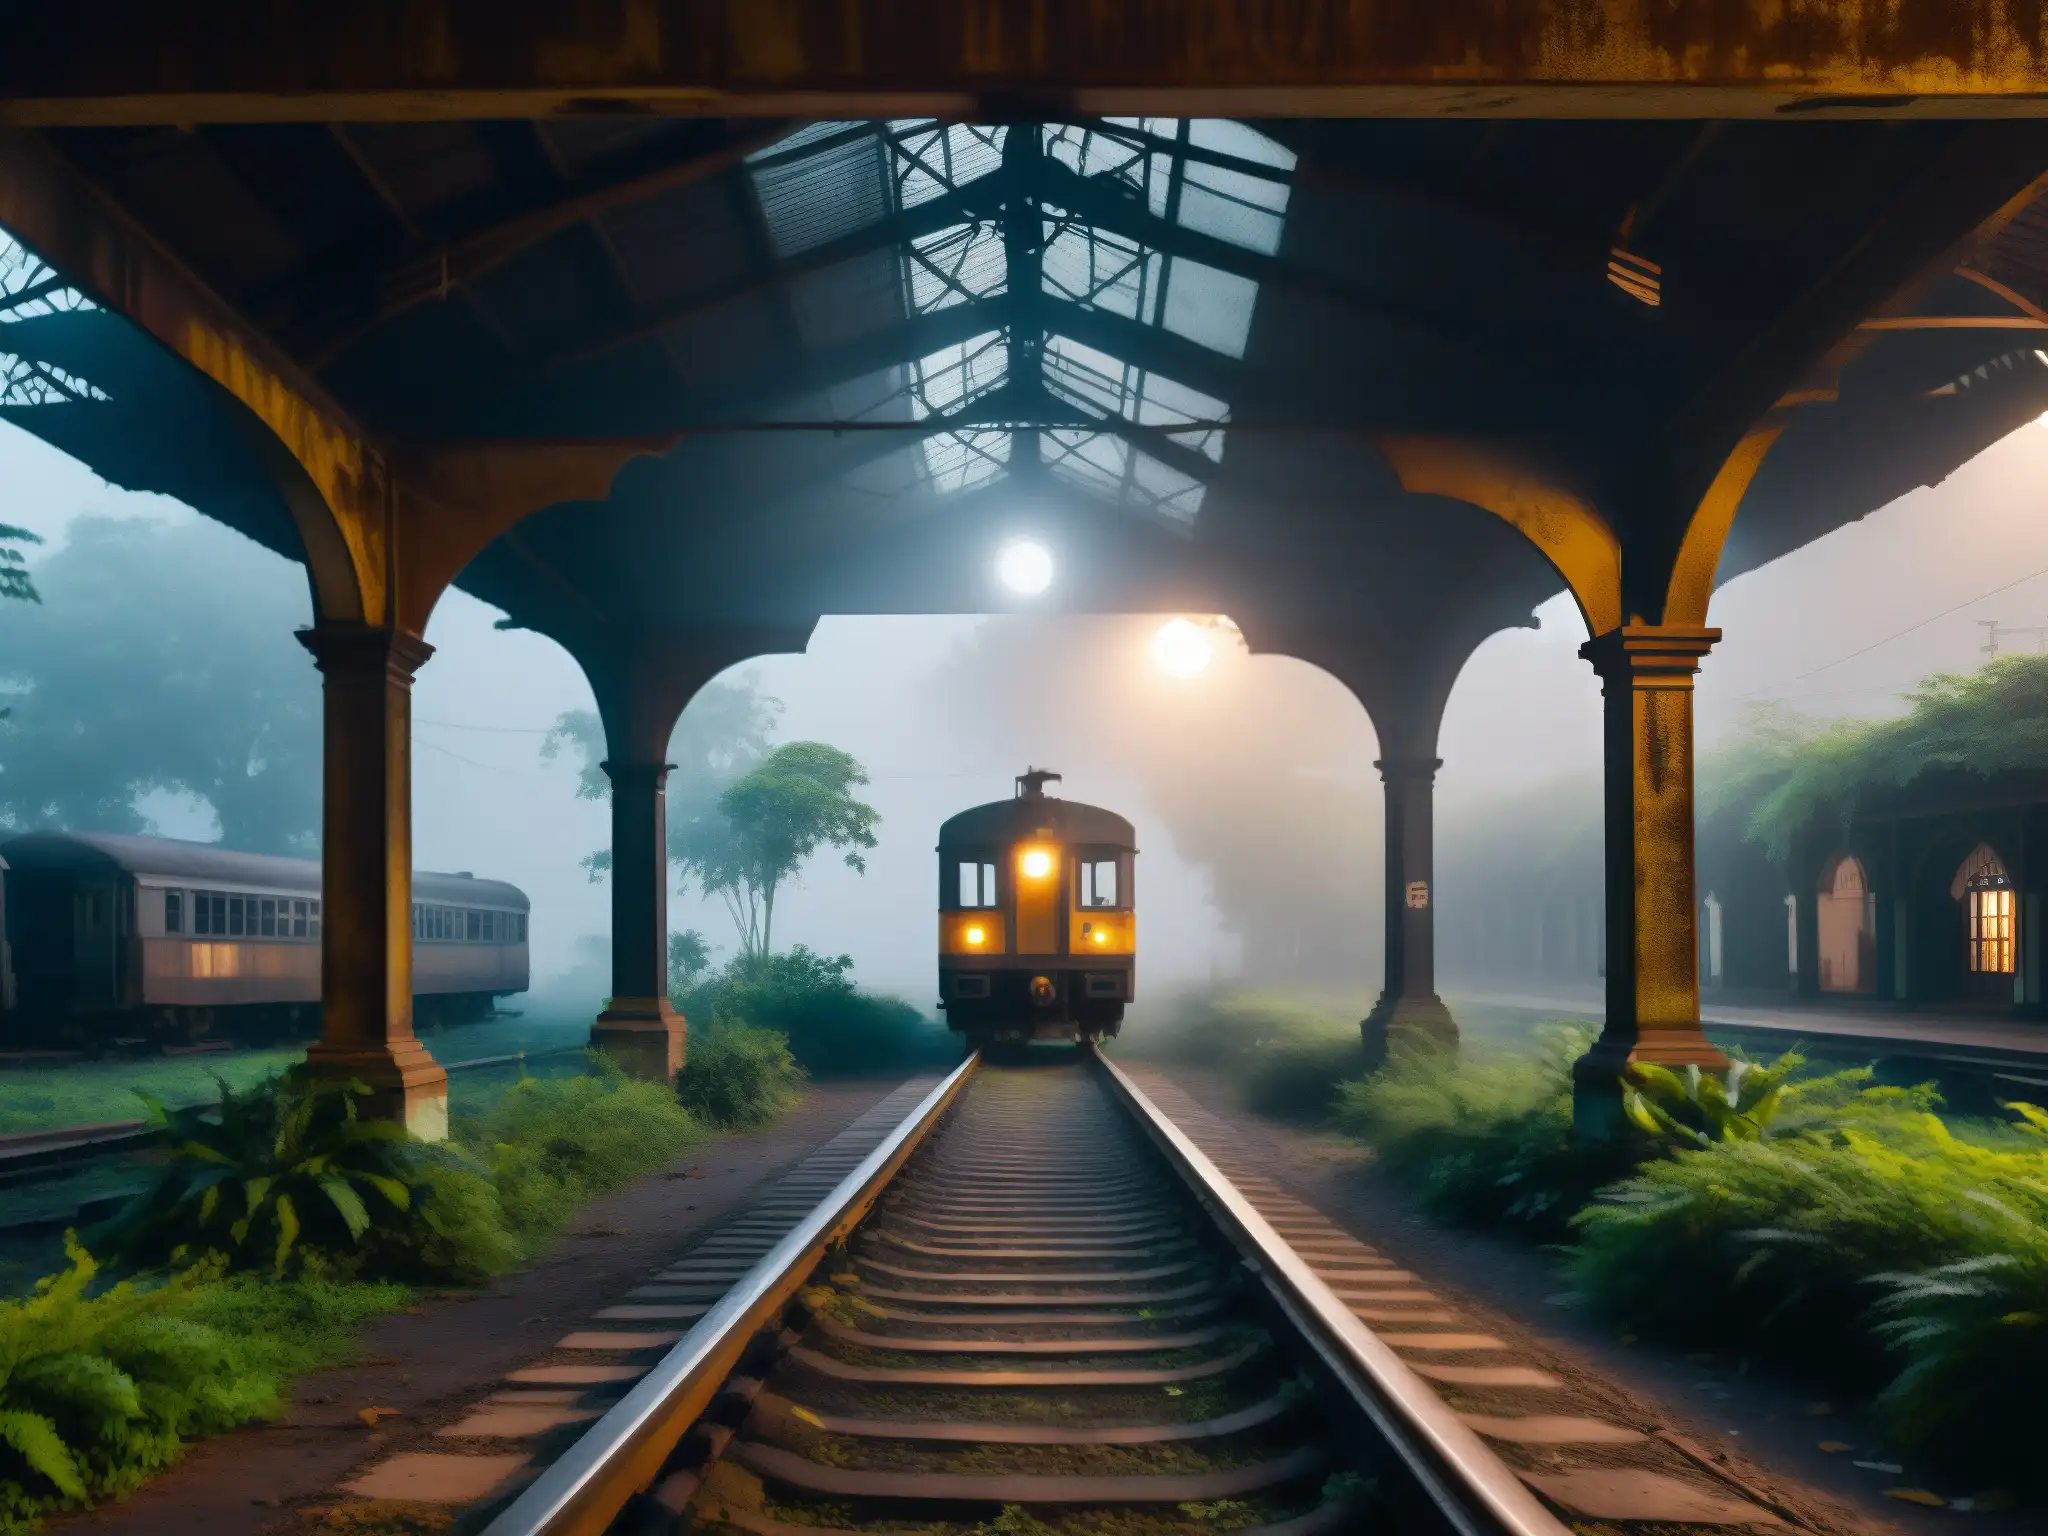 Tren fantasma en una estación abandonada de la India, entre la niebla de la noche, rodeada por la vegetación